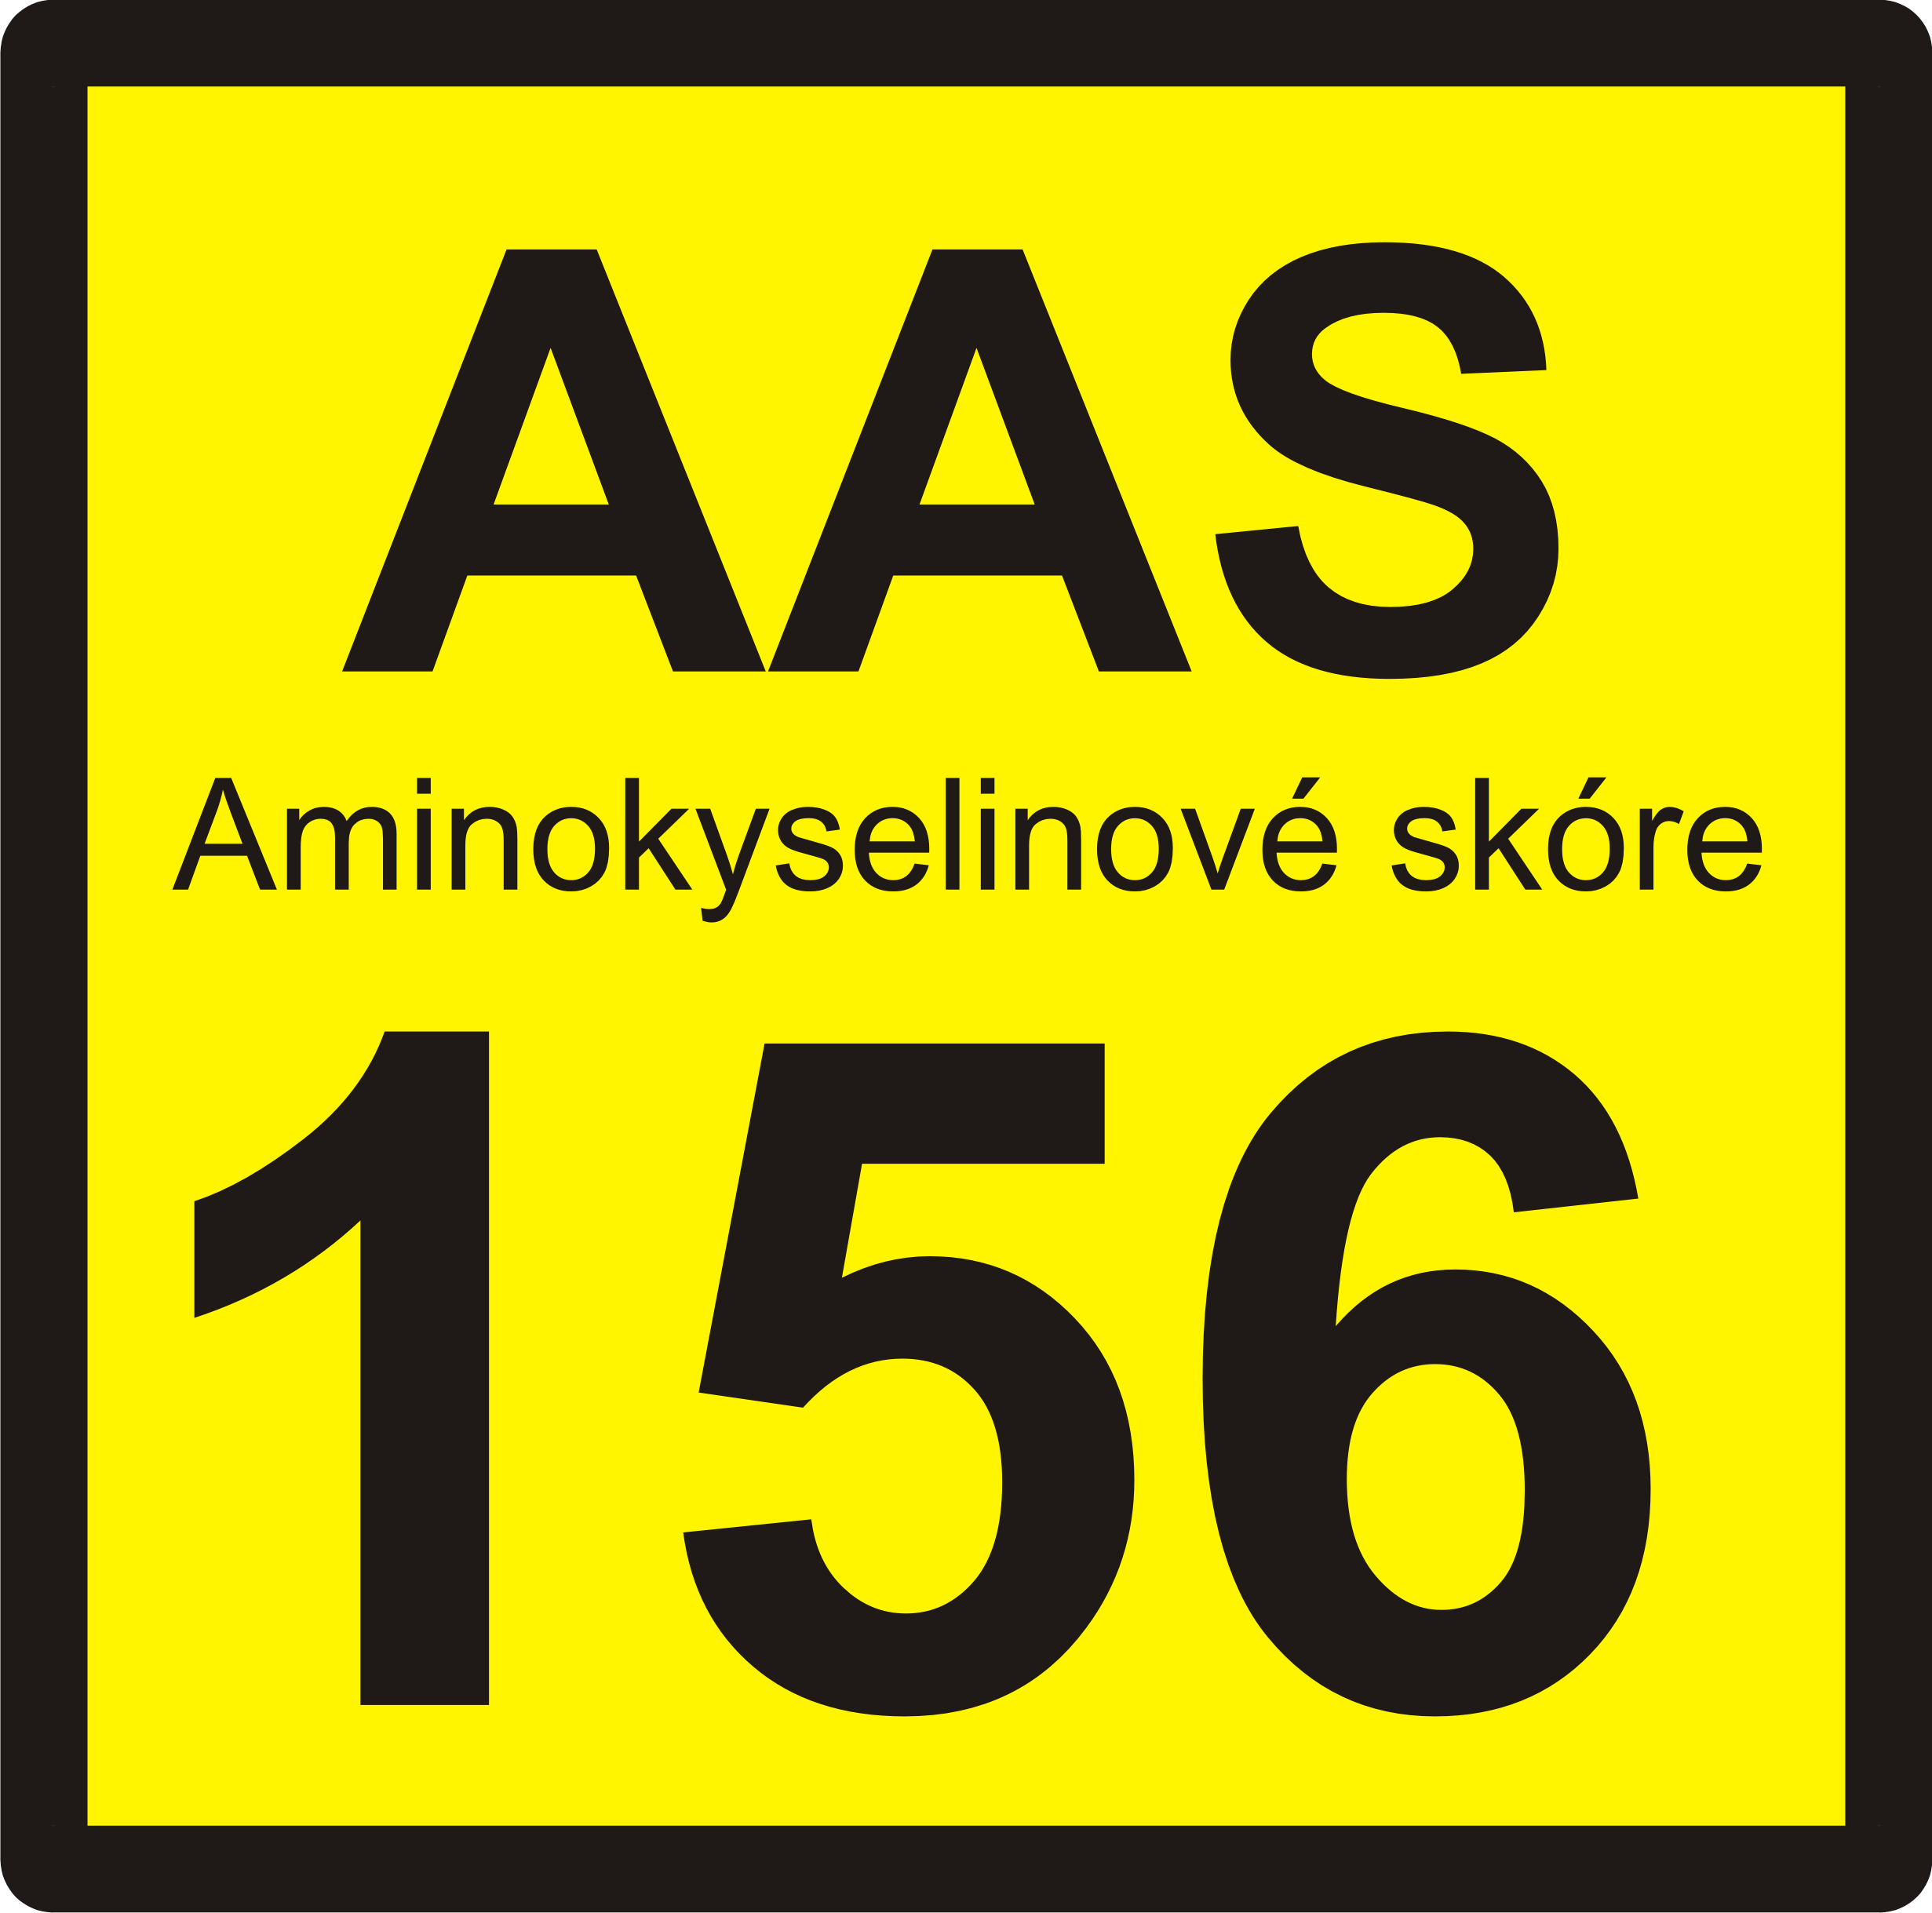 aminokyselinové skóre156